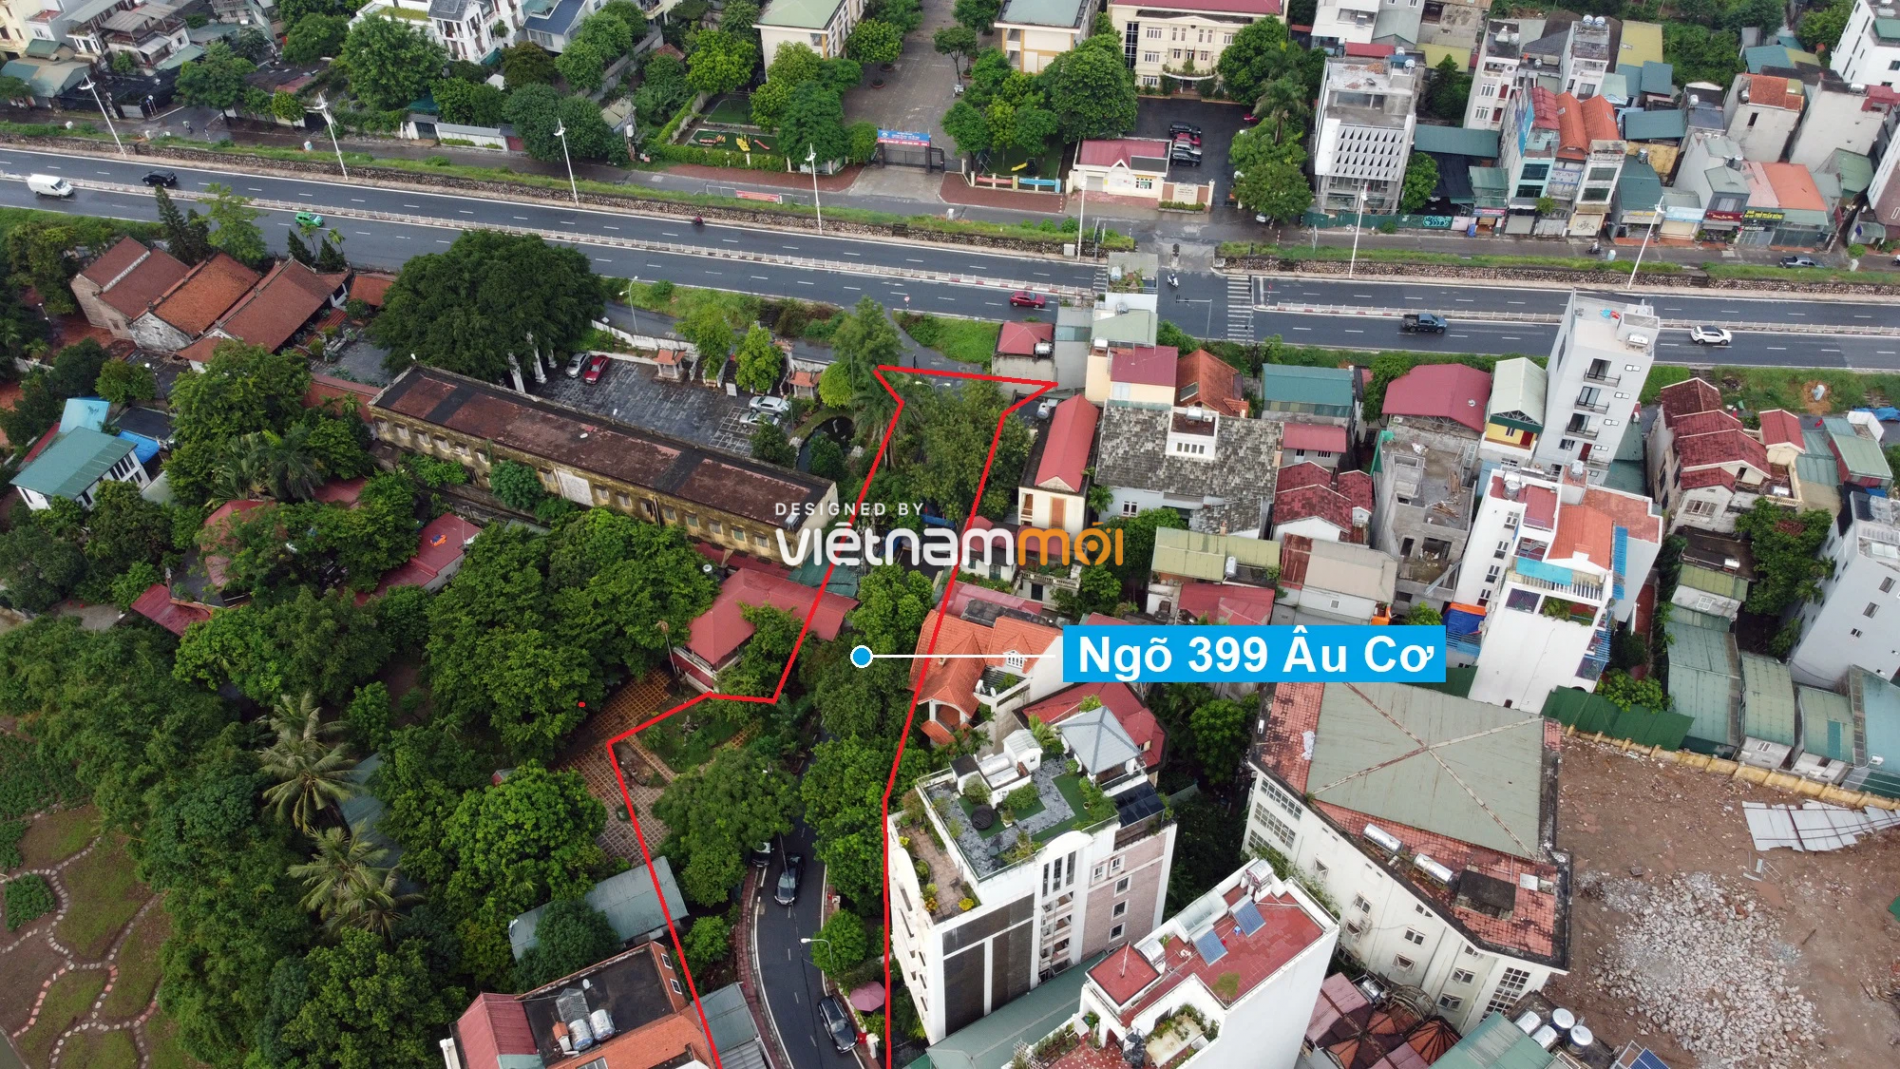 Những khu đất sắp thu hồi để mở đường ở quận Tây Hồ, Hà Nội (phần 2) - Ảnh 16.